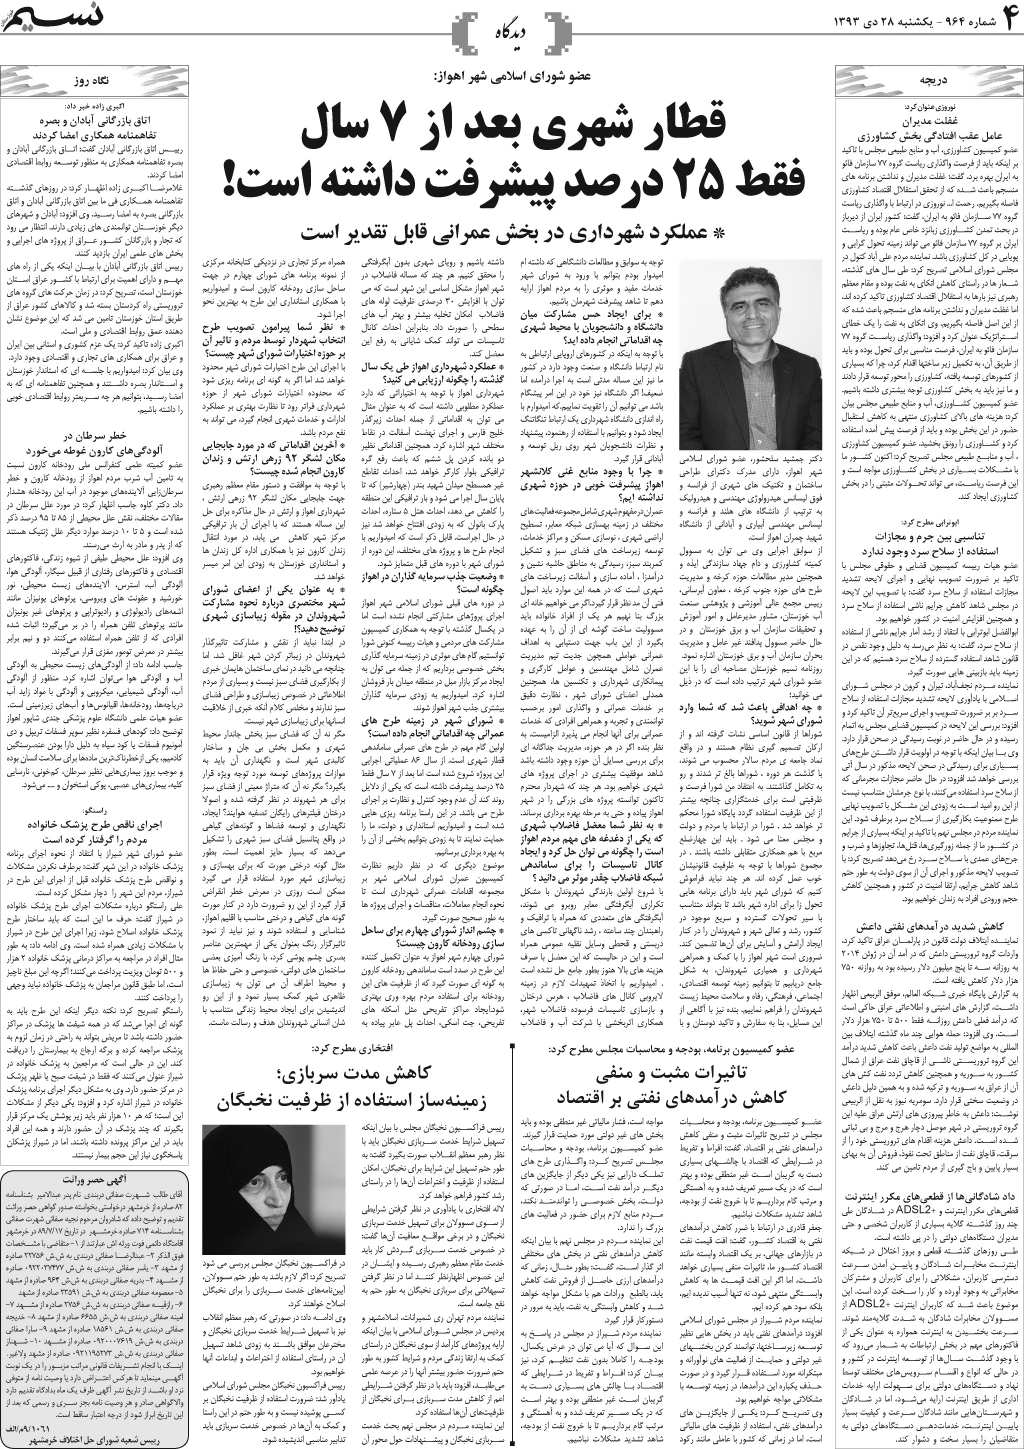 صفحه دیدگاه روزنامه نسیم شماره 964